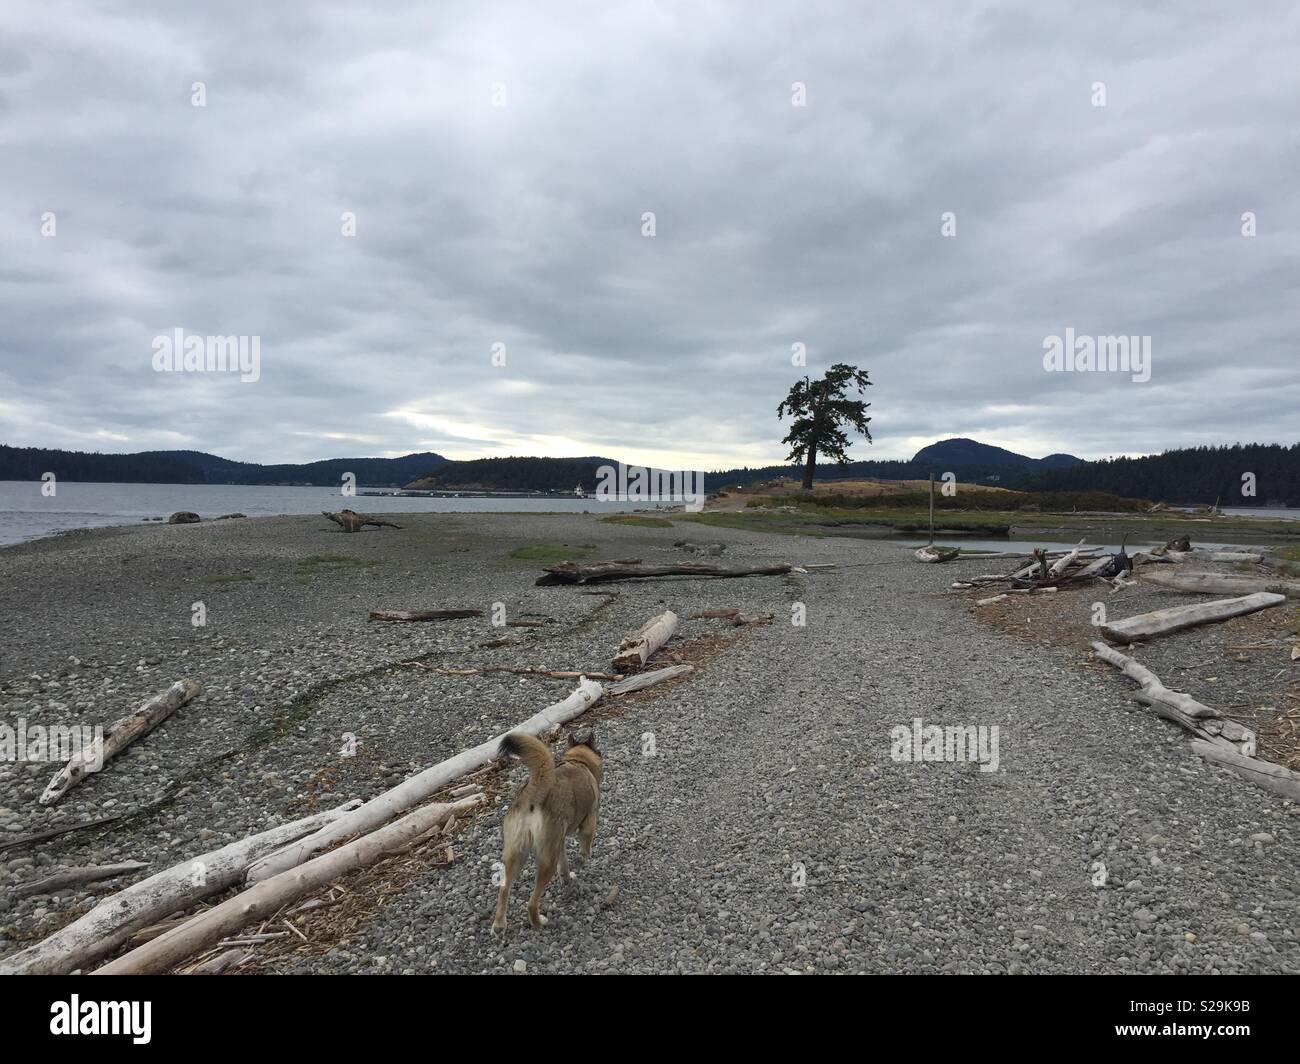 Dies ist ein Blick auf den Nordwesten Washington Skagit Bay über Sand und Kies weg zum Wasser mit Treibholz liegen, wo sich ein Blick auf das Meer. Stockfoto